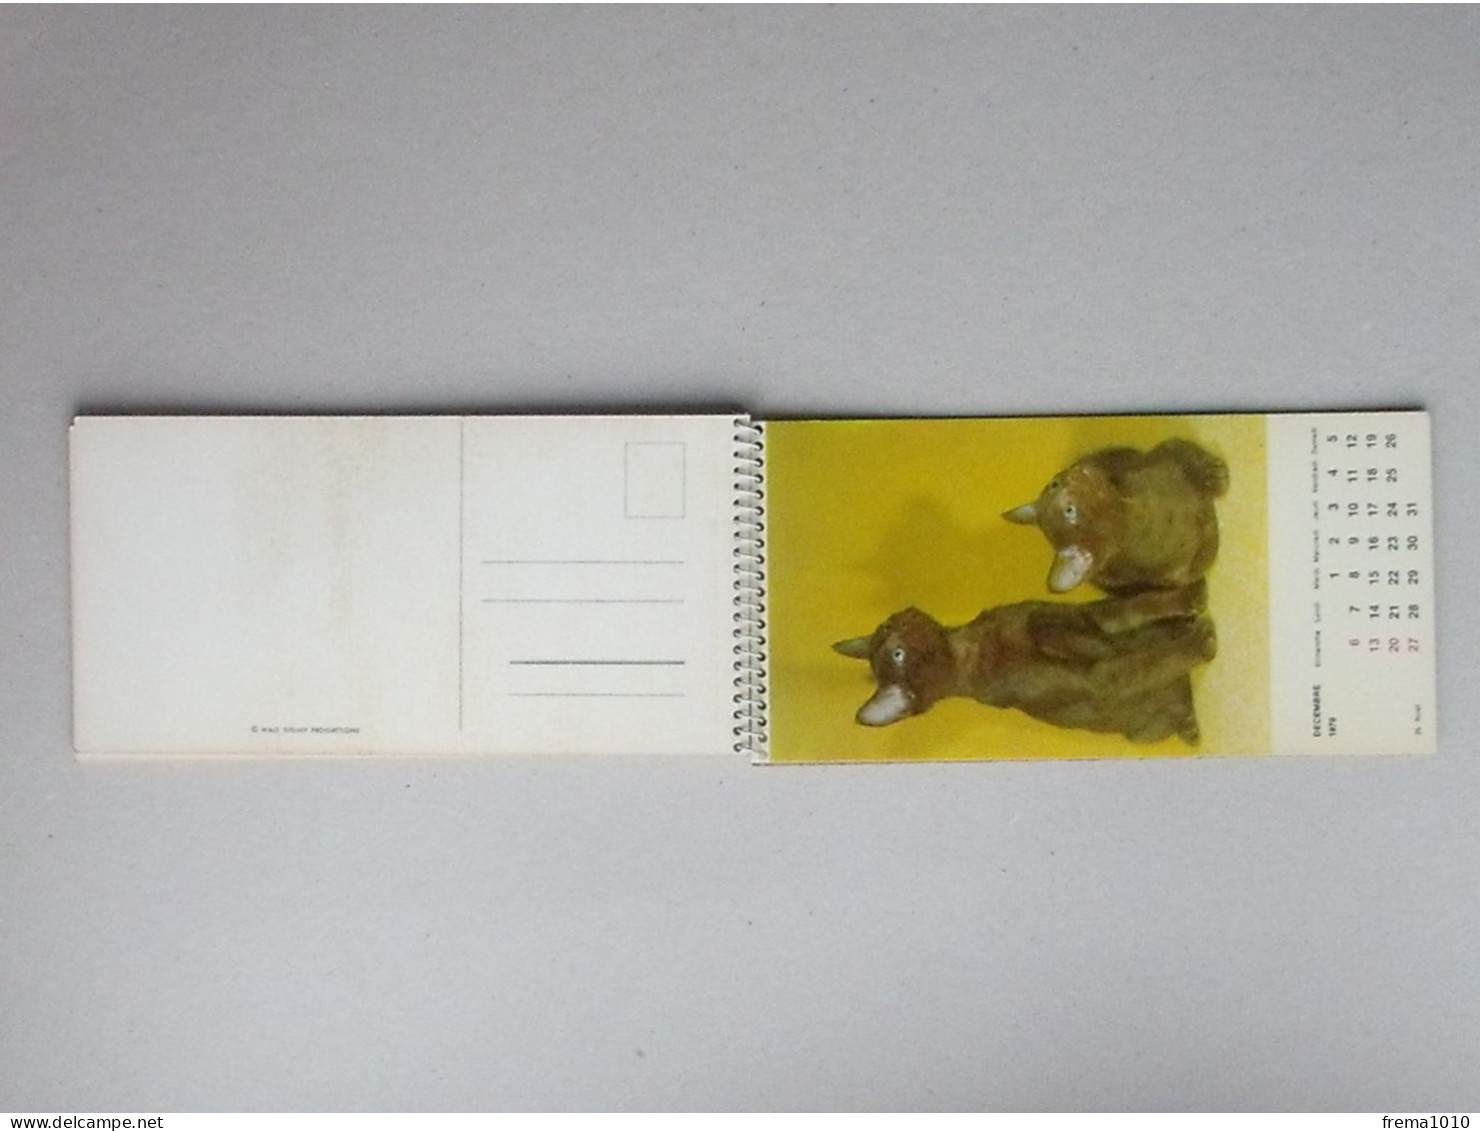 CALENDRIER 1970: Thème LES CHATONS Chaque mois est utilisable en carte postale - CHAT  Ed. LYS Belgique Prod. W. DISNEY